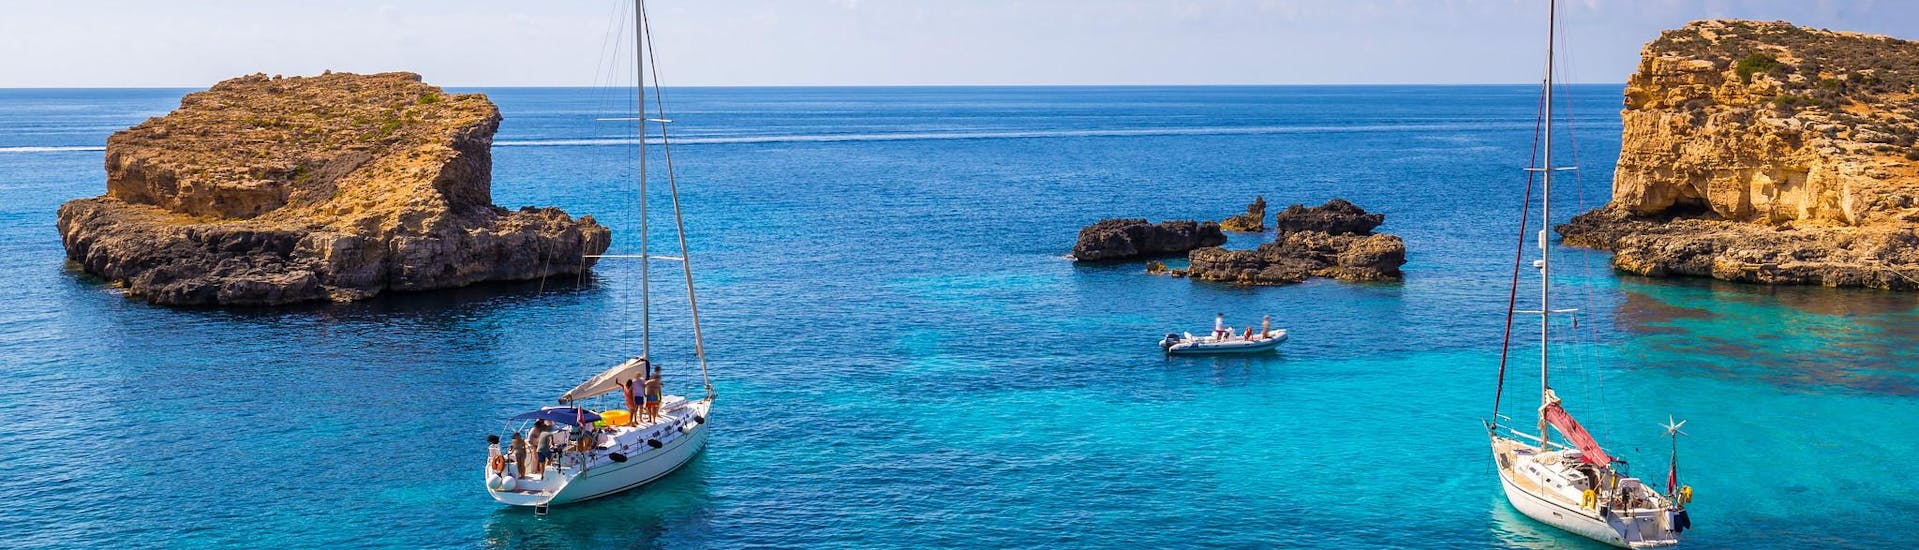 Mehrere Boote in der blauen Lagune von Malta während einer Bootsfahrt.